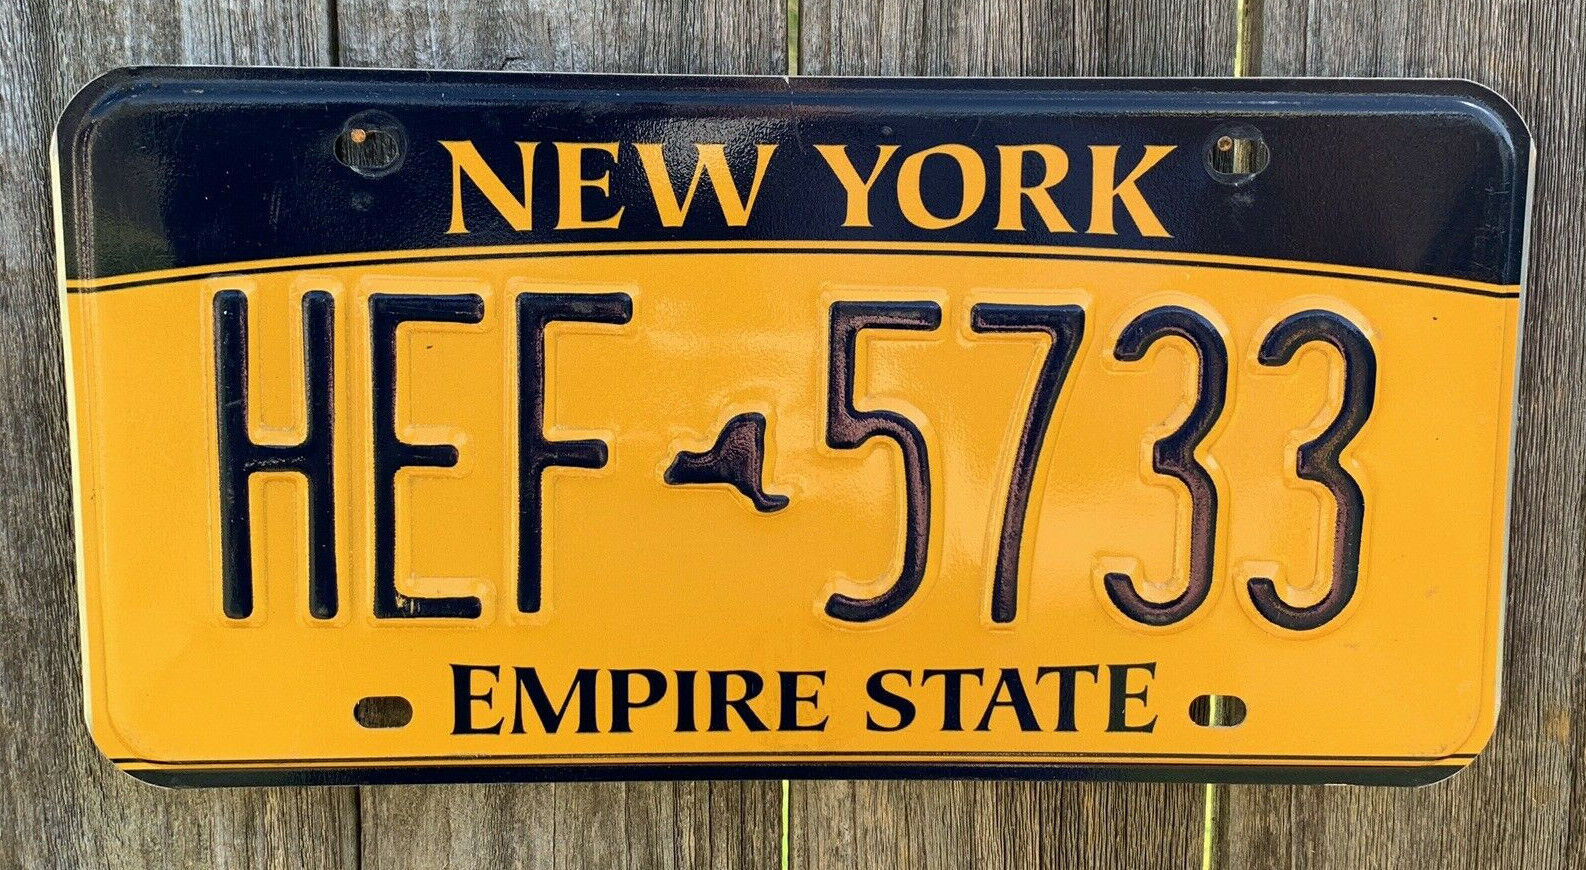 VINTAGE NEW YORK LICENSE PLATE HUGE HEFNER #HEF5733